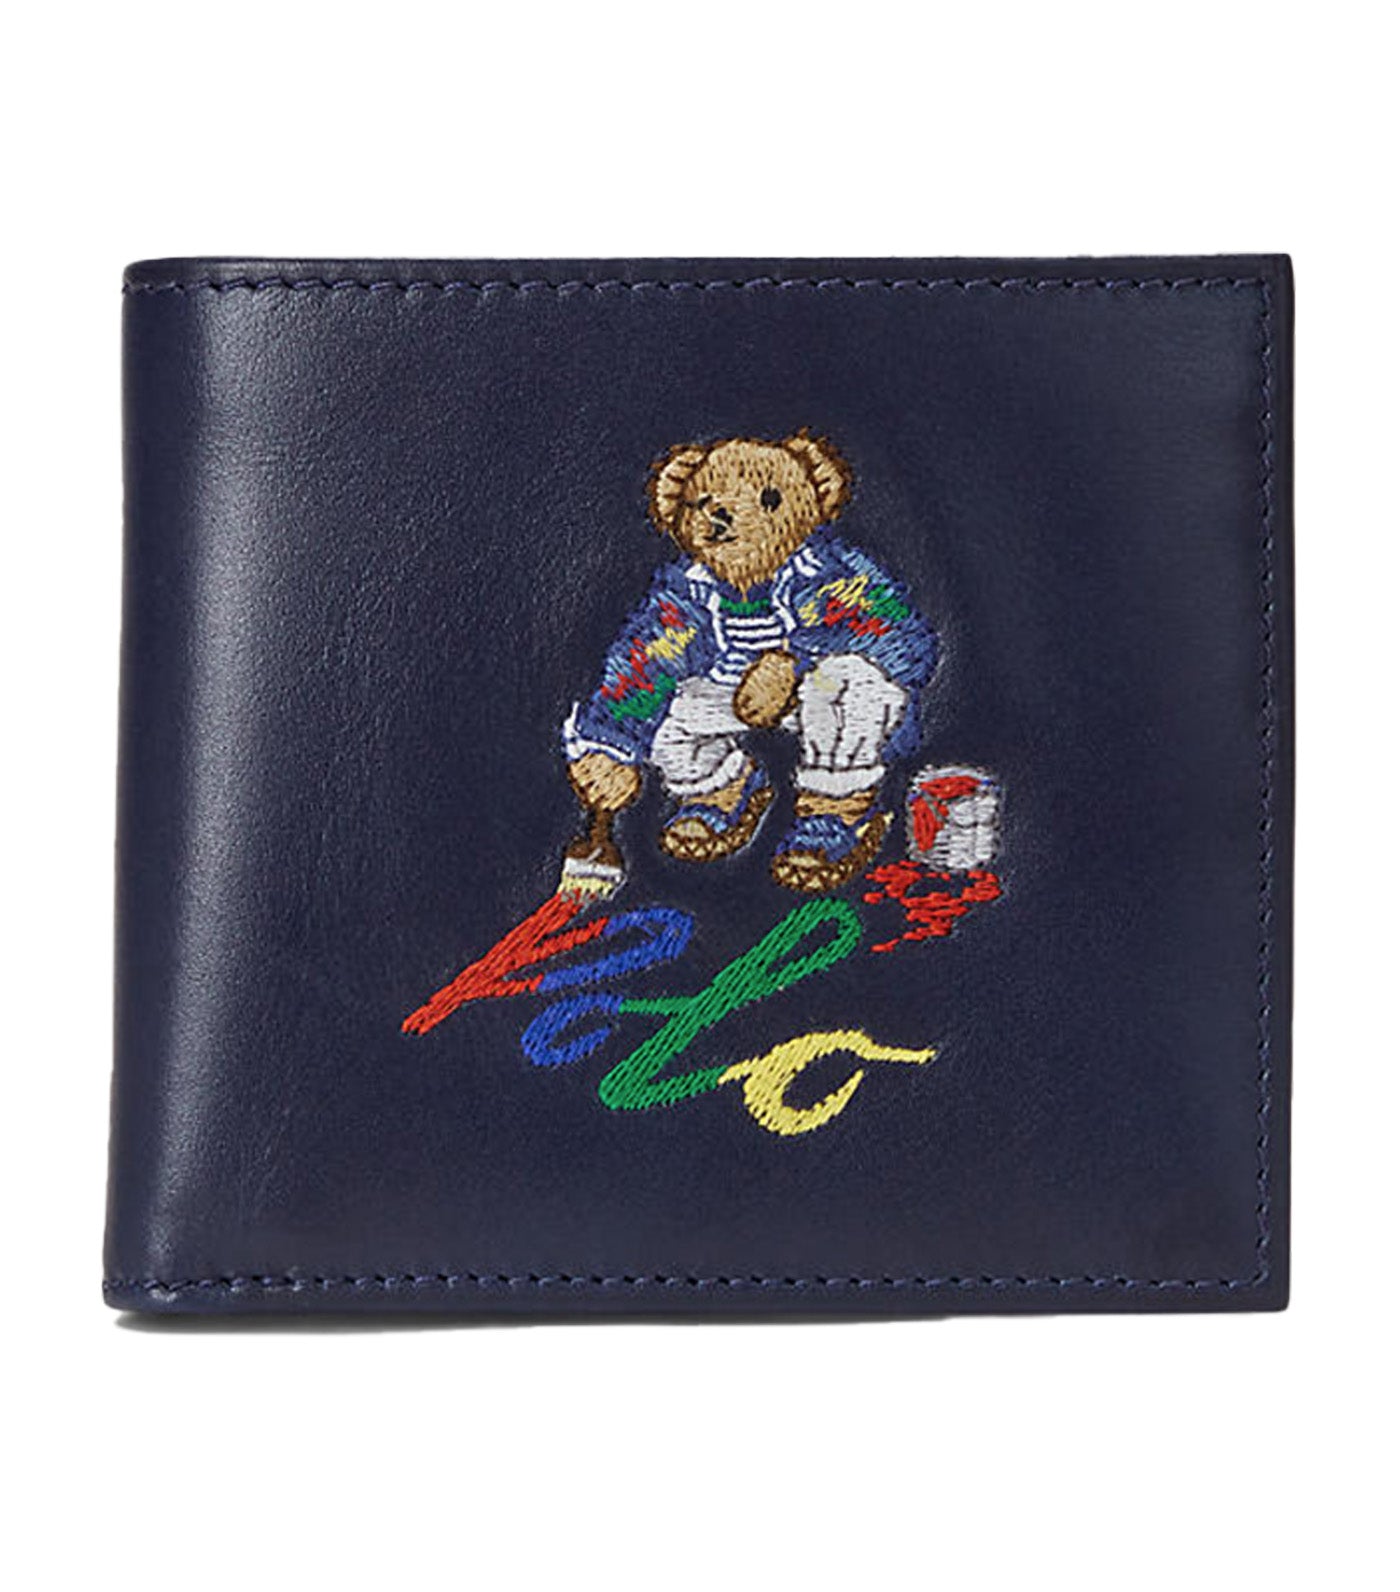 Polo Bear Leather Billfold Wallet